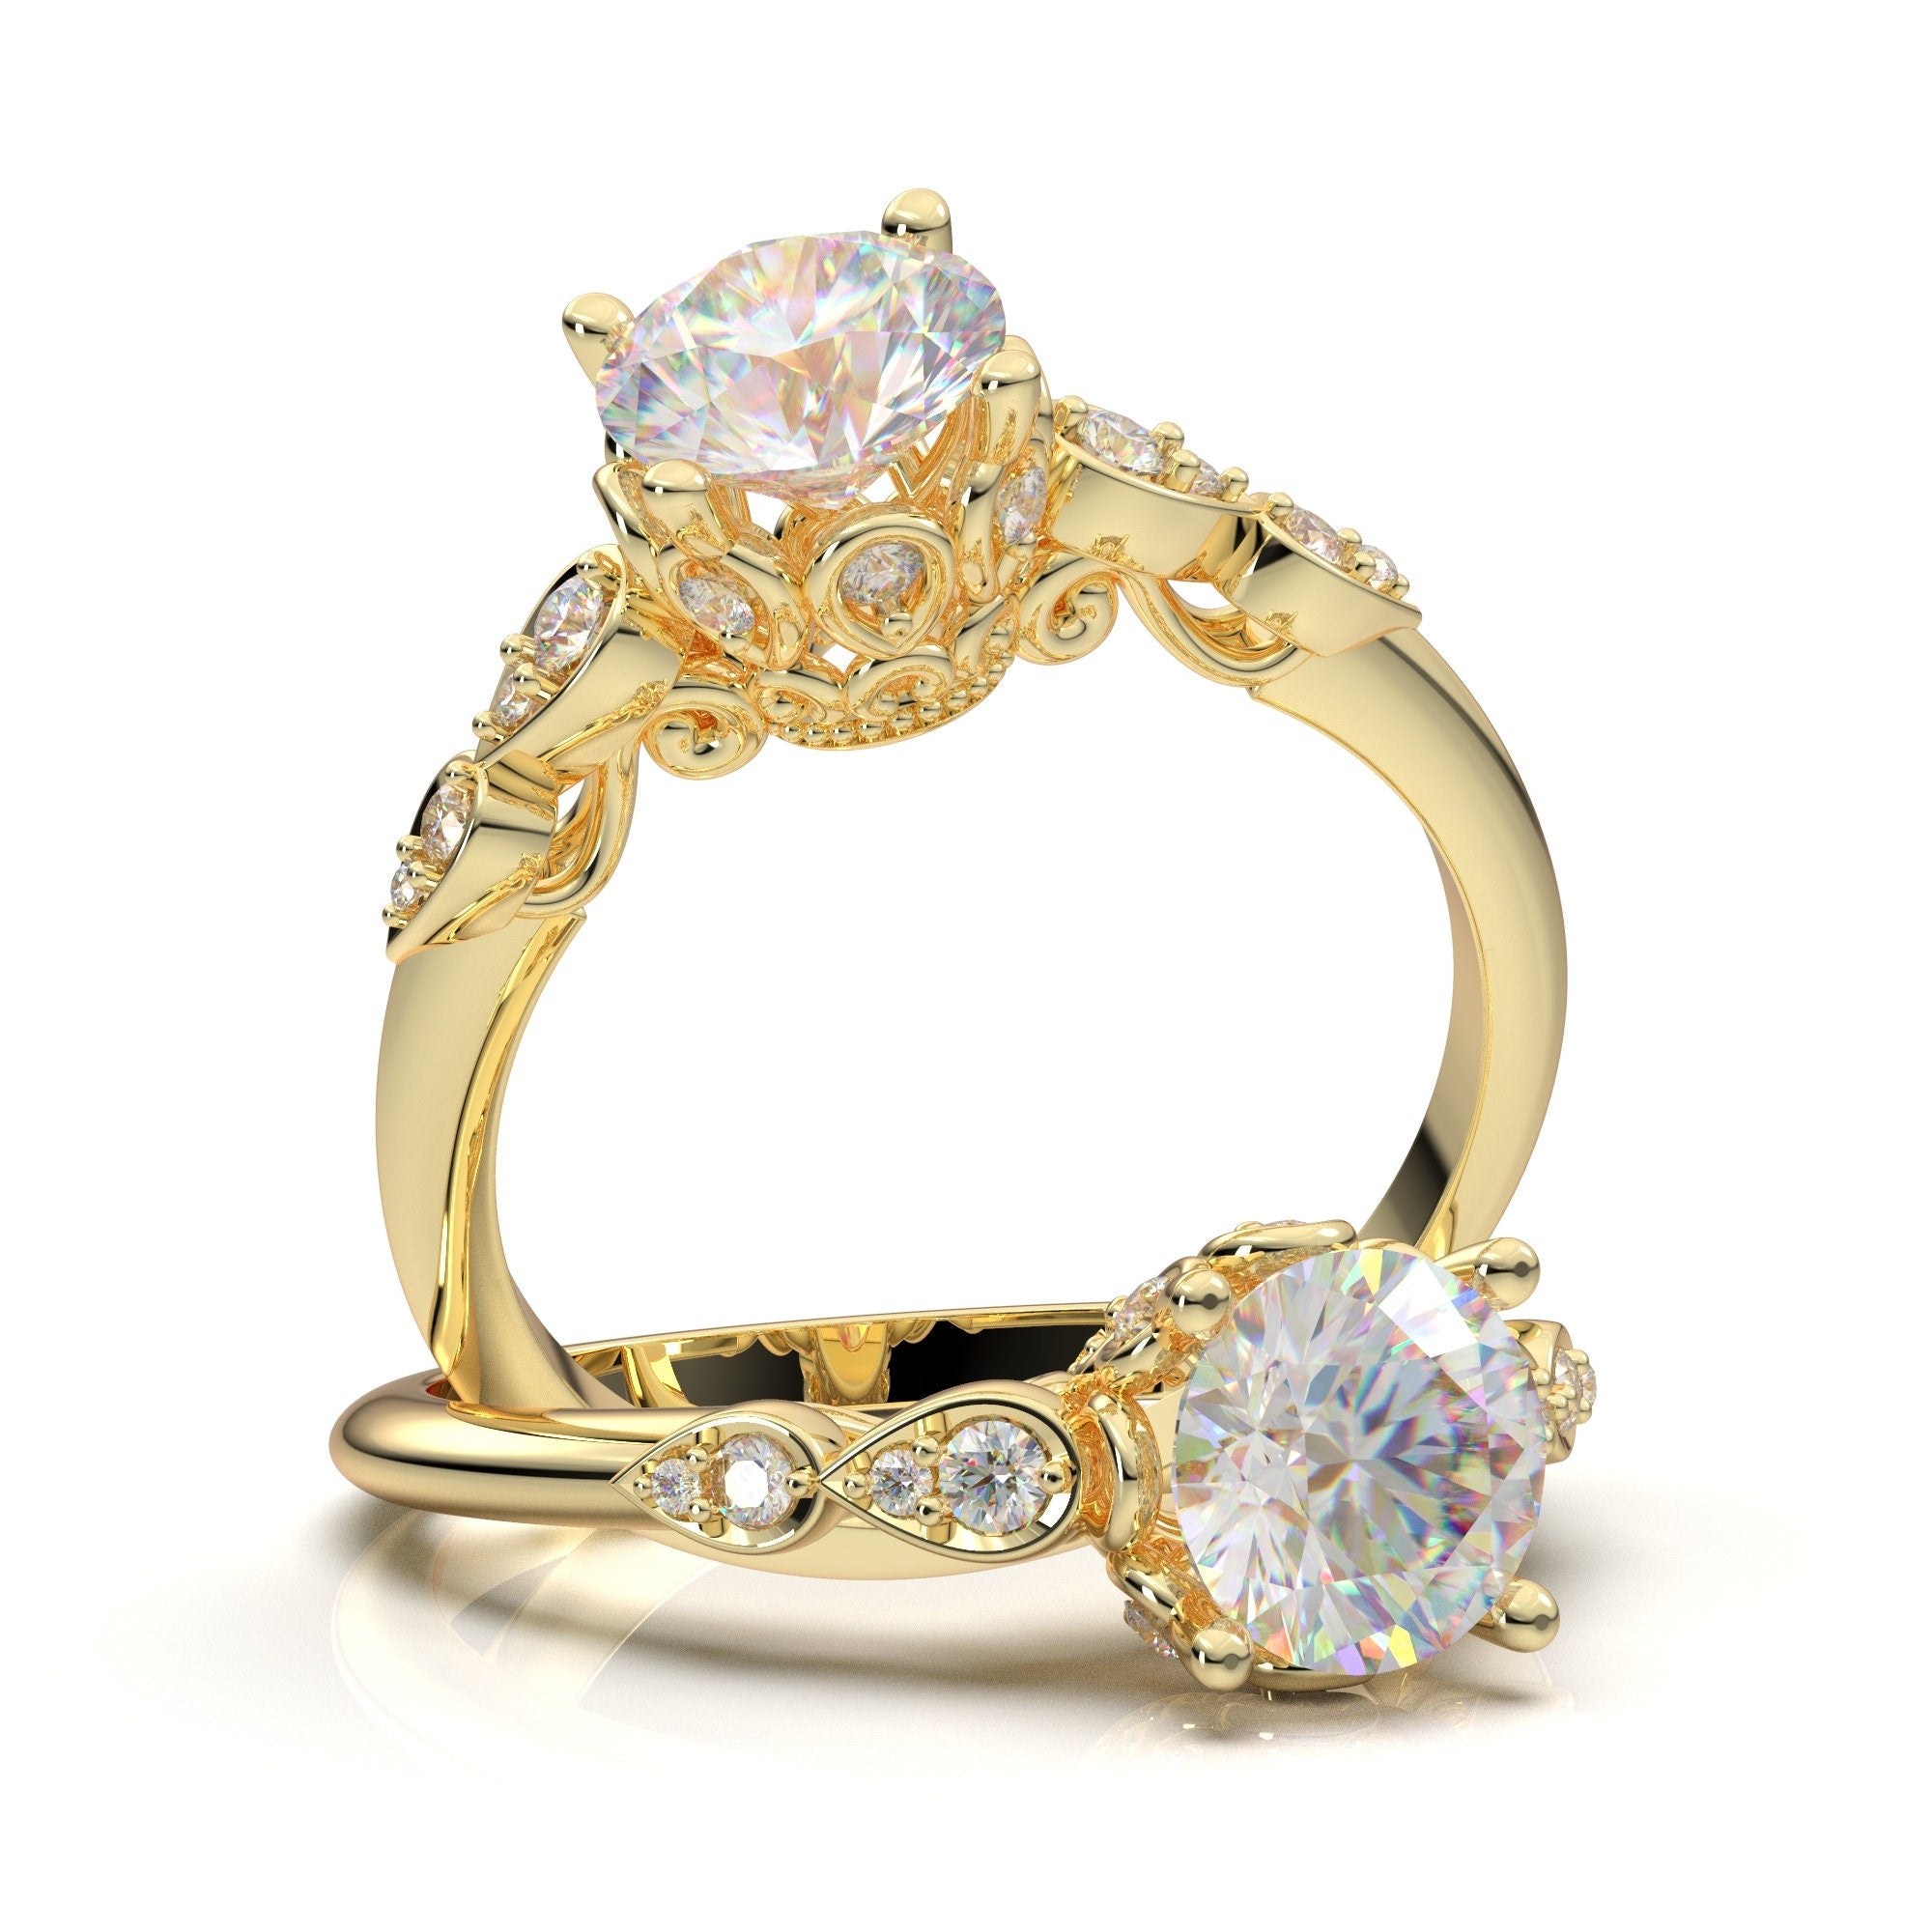 14K Solid White Gold Diamond Ring, Moissanite Engagement Ring, Promise Ring  Women, Vintage Art Deco Ring, Anniversary Birthday Gift for Her